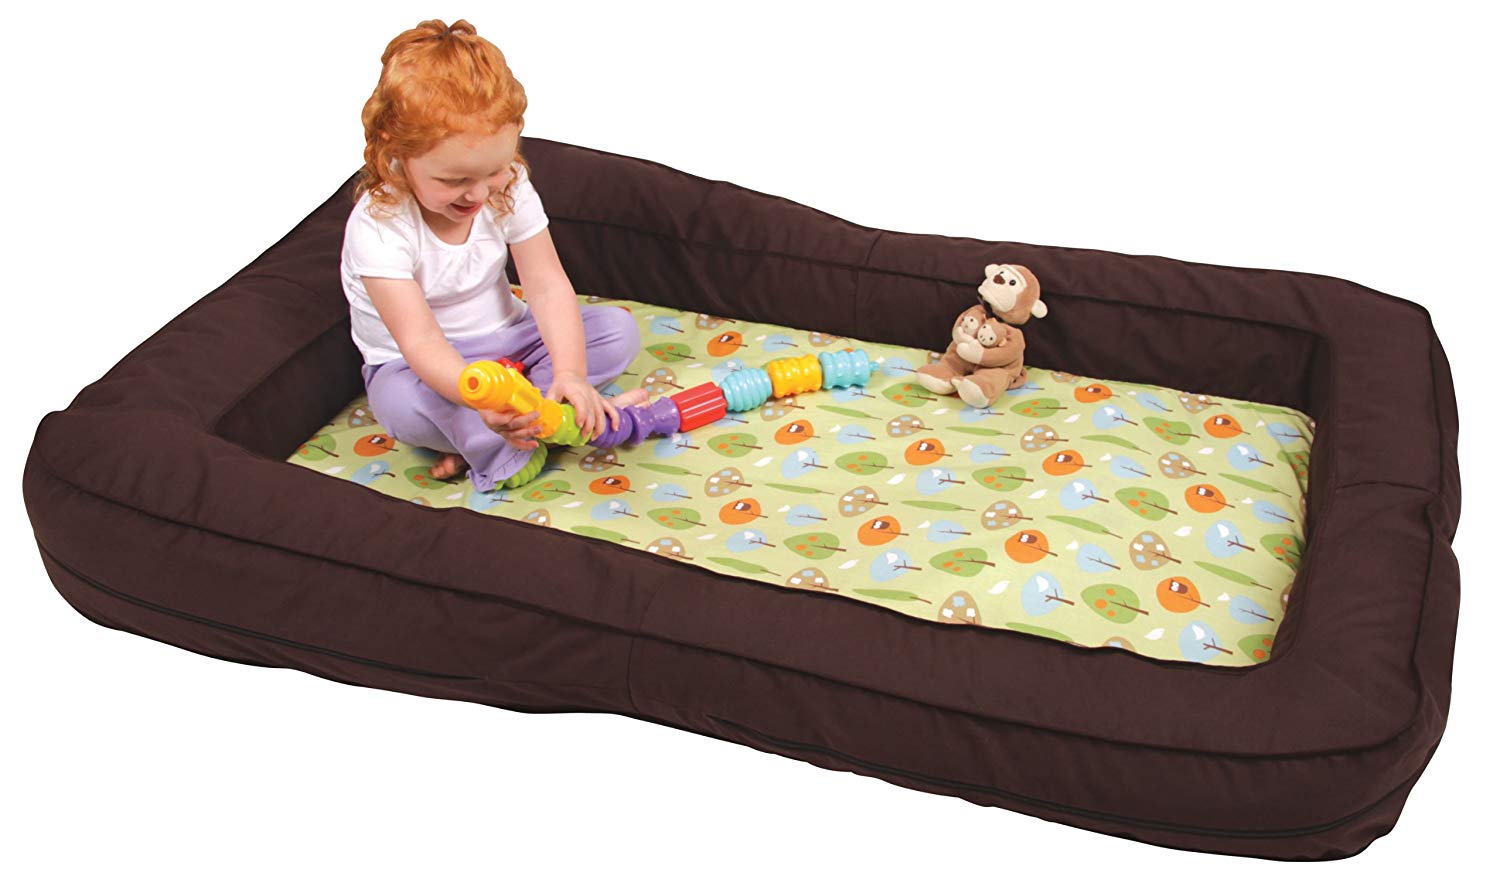 kohl's toddler bed mattress